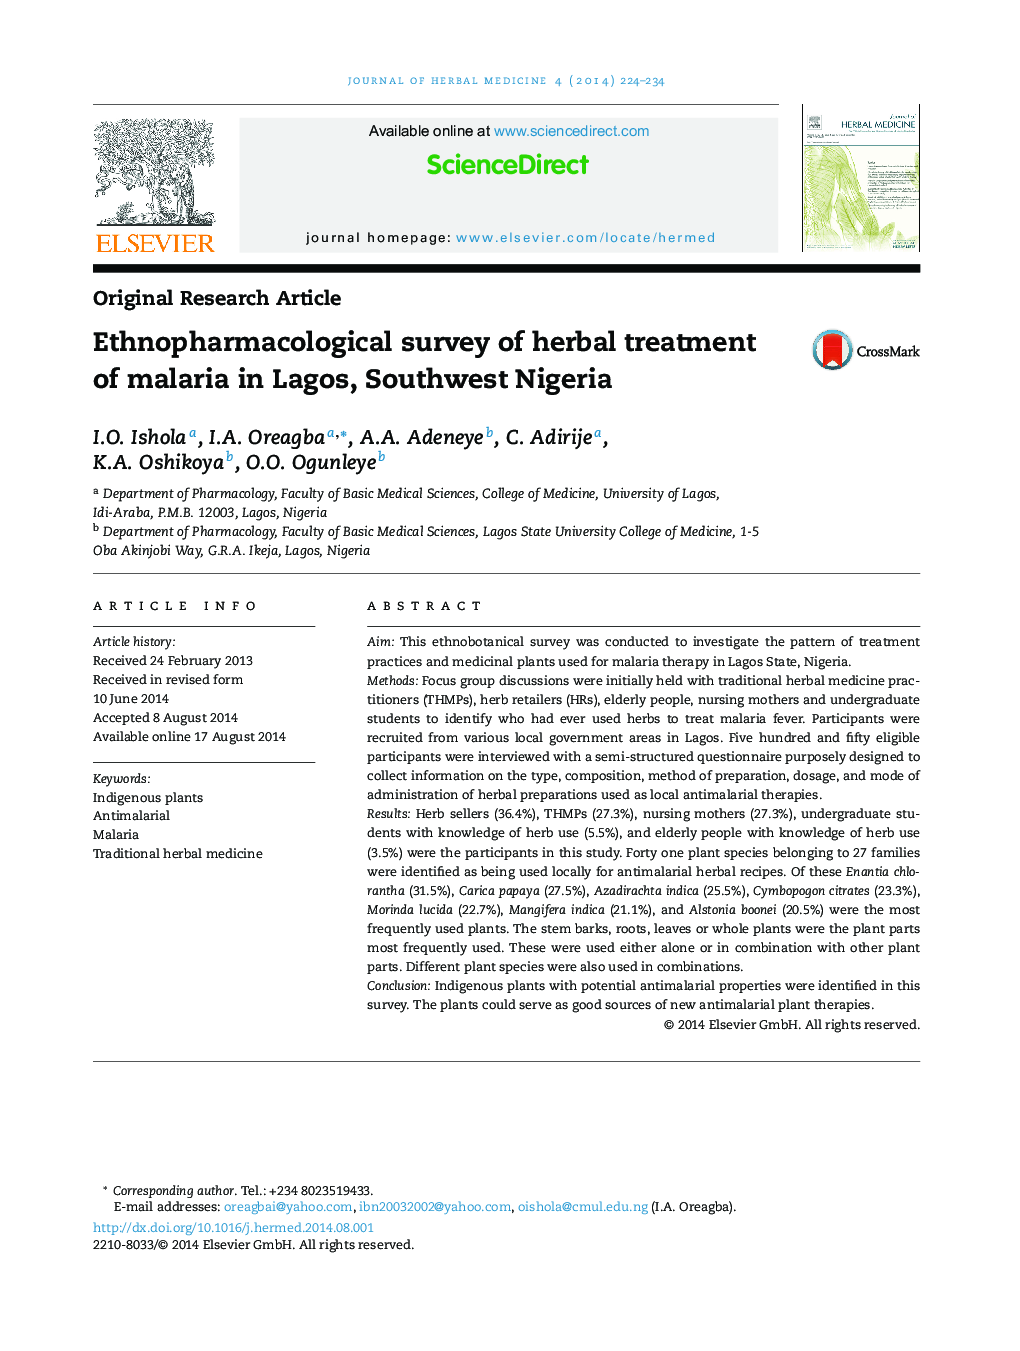 تحقیقات Ethnopharmacological در درمان گیاهی مالاریا در لاگوس، جنوب غربی نیجریه